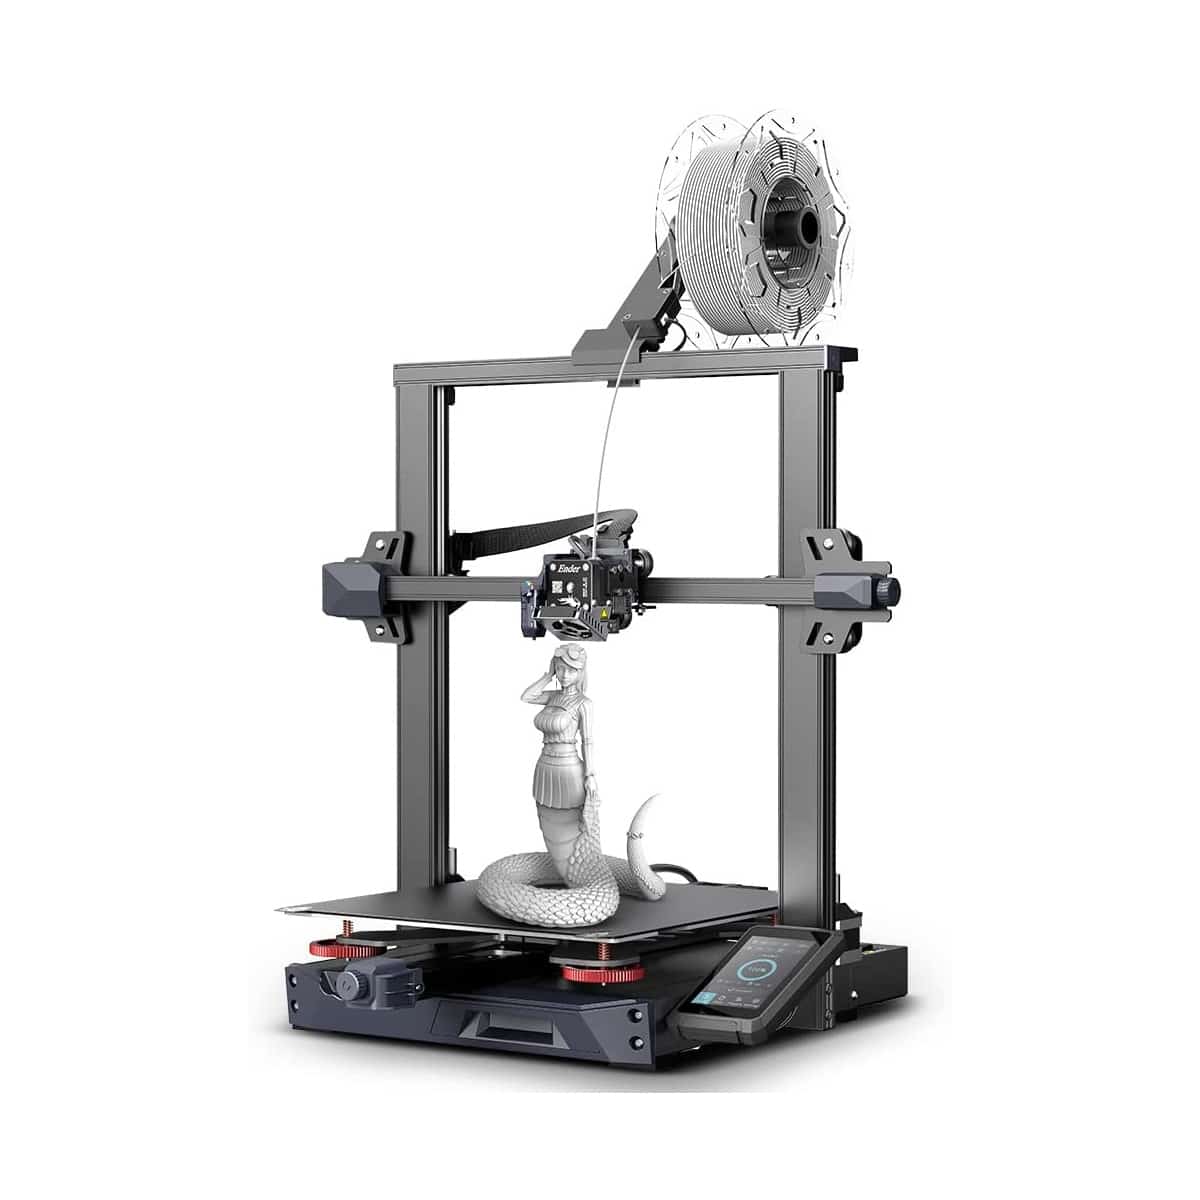 Køb Creality Ender 3 S1 Plus 3d printer - Pris 3999.00 kr.